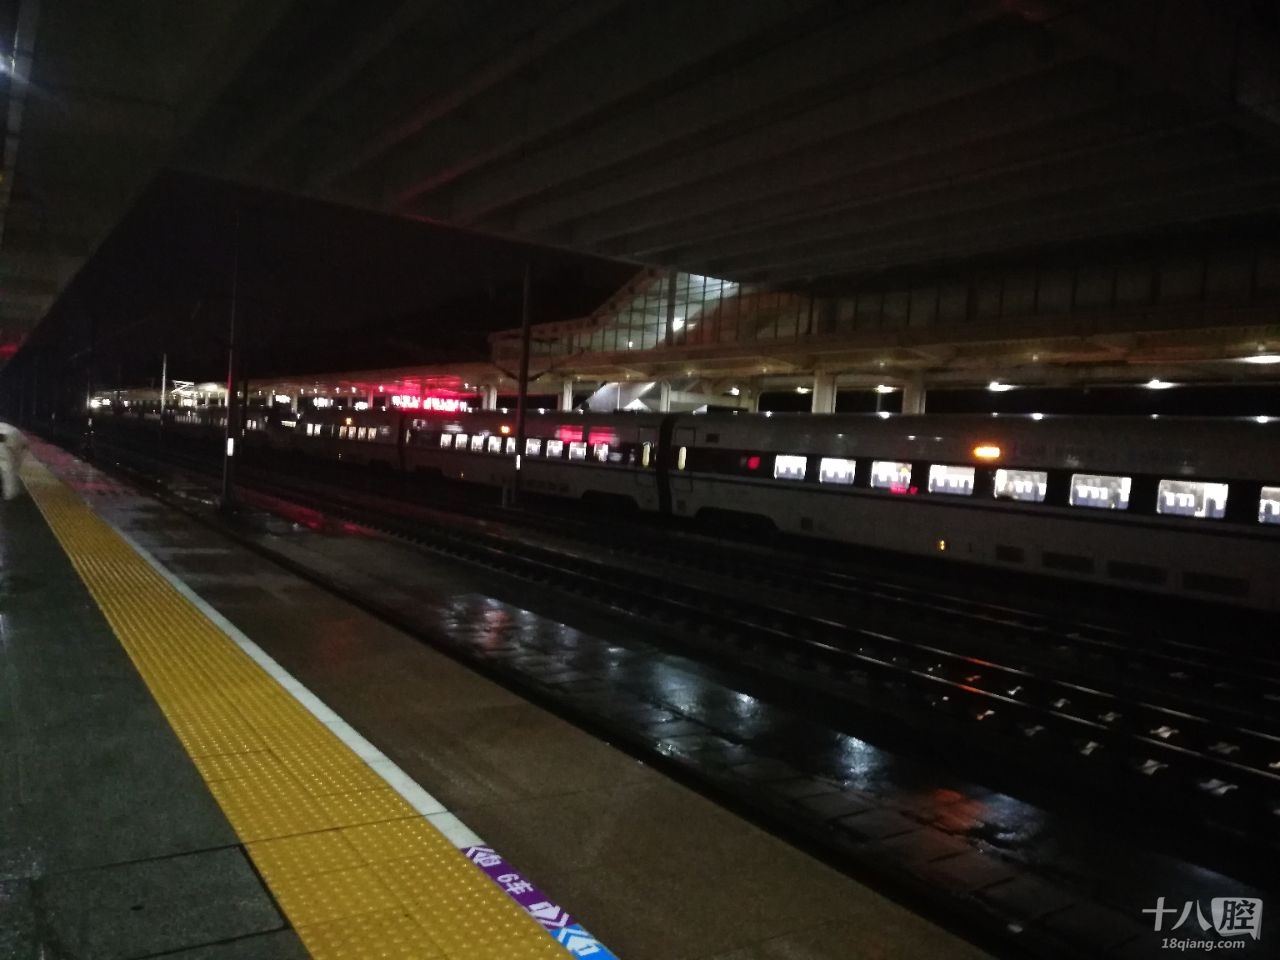 夜晚火车站,希望有一天能在义乌安家,不用再颠沛流离